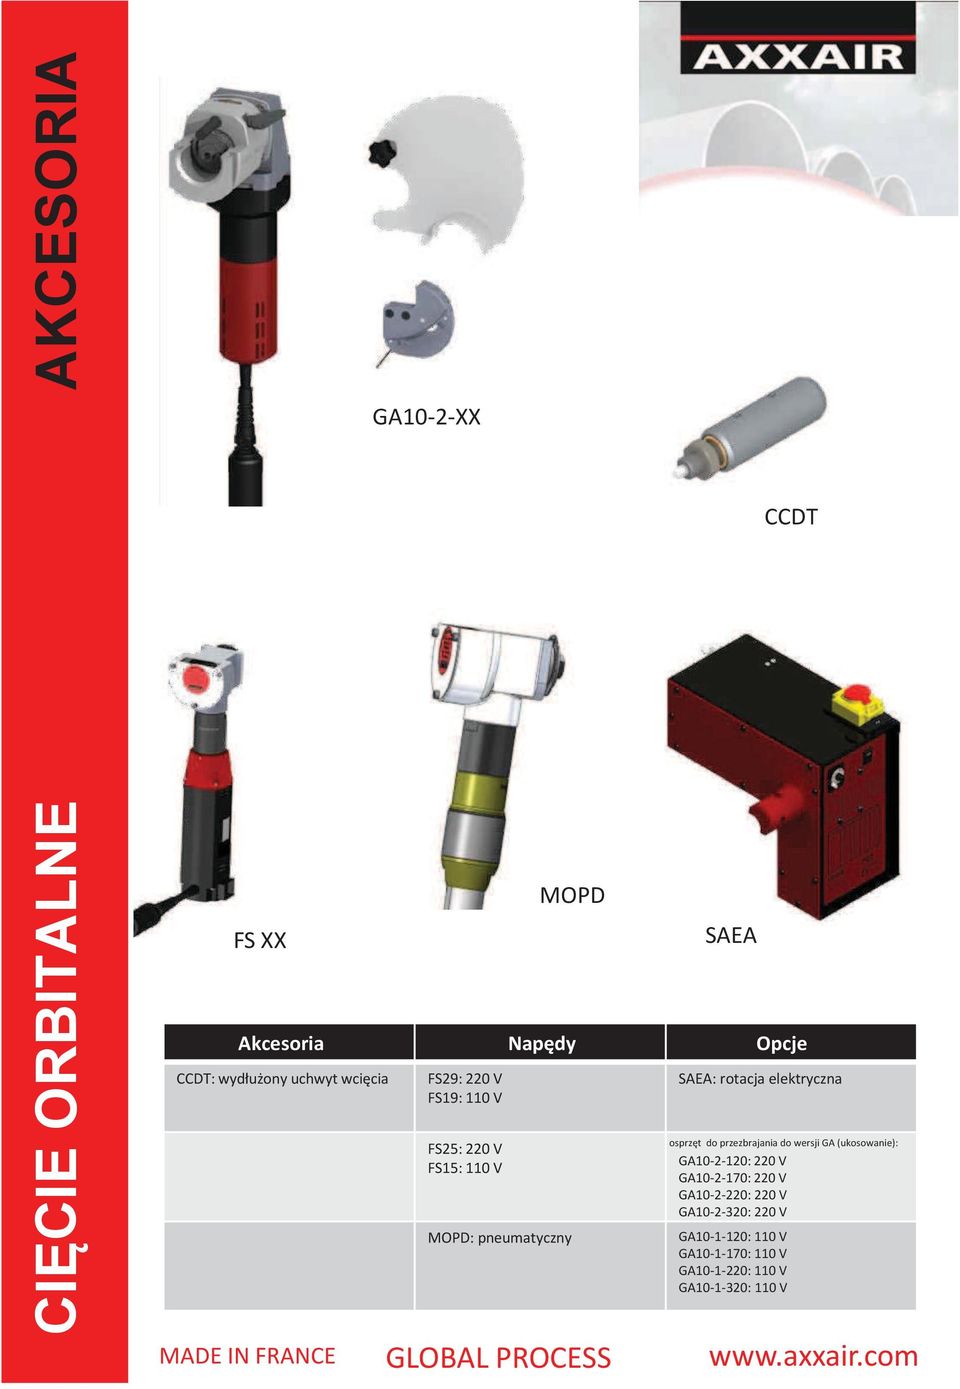 elektryczna osprzęt do przezbrajania do wersji GA (ukosowanie): GA10-2-120: 220 V GA10-2-170: 220 V